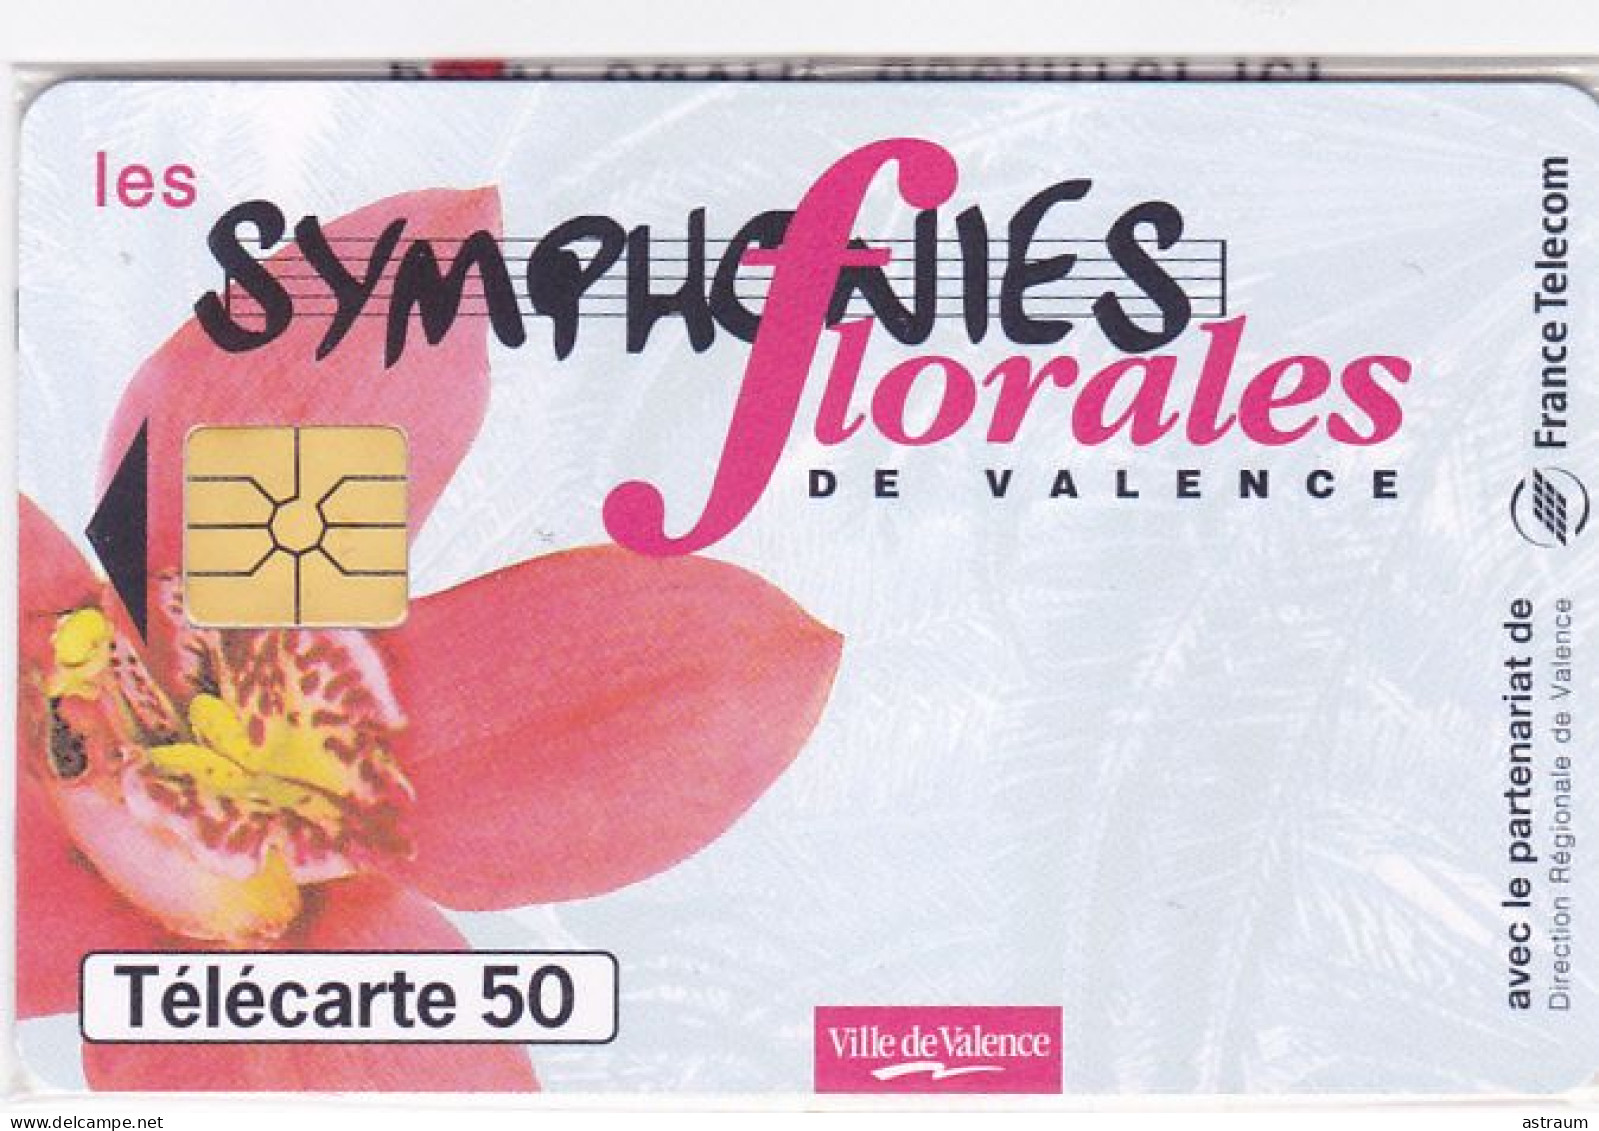 Telecarte Privée / Publique En1634 NSB - Symphonies Florales De Valence - 50 U - Gem - 1997 - 50 Units